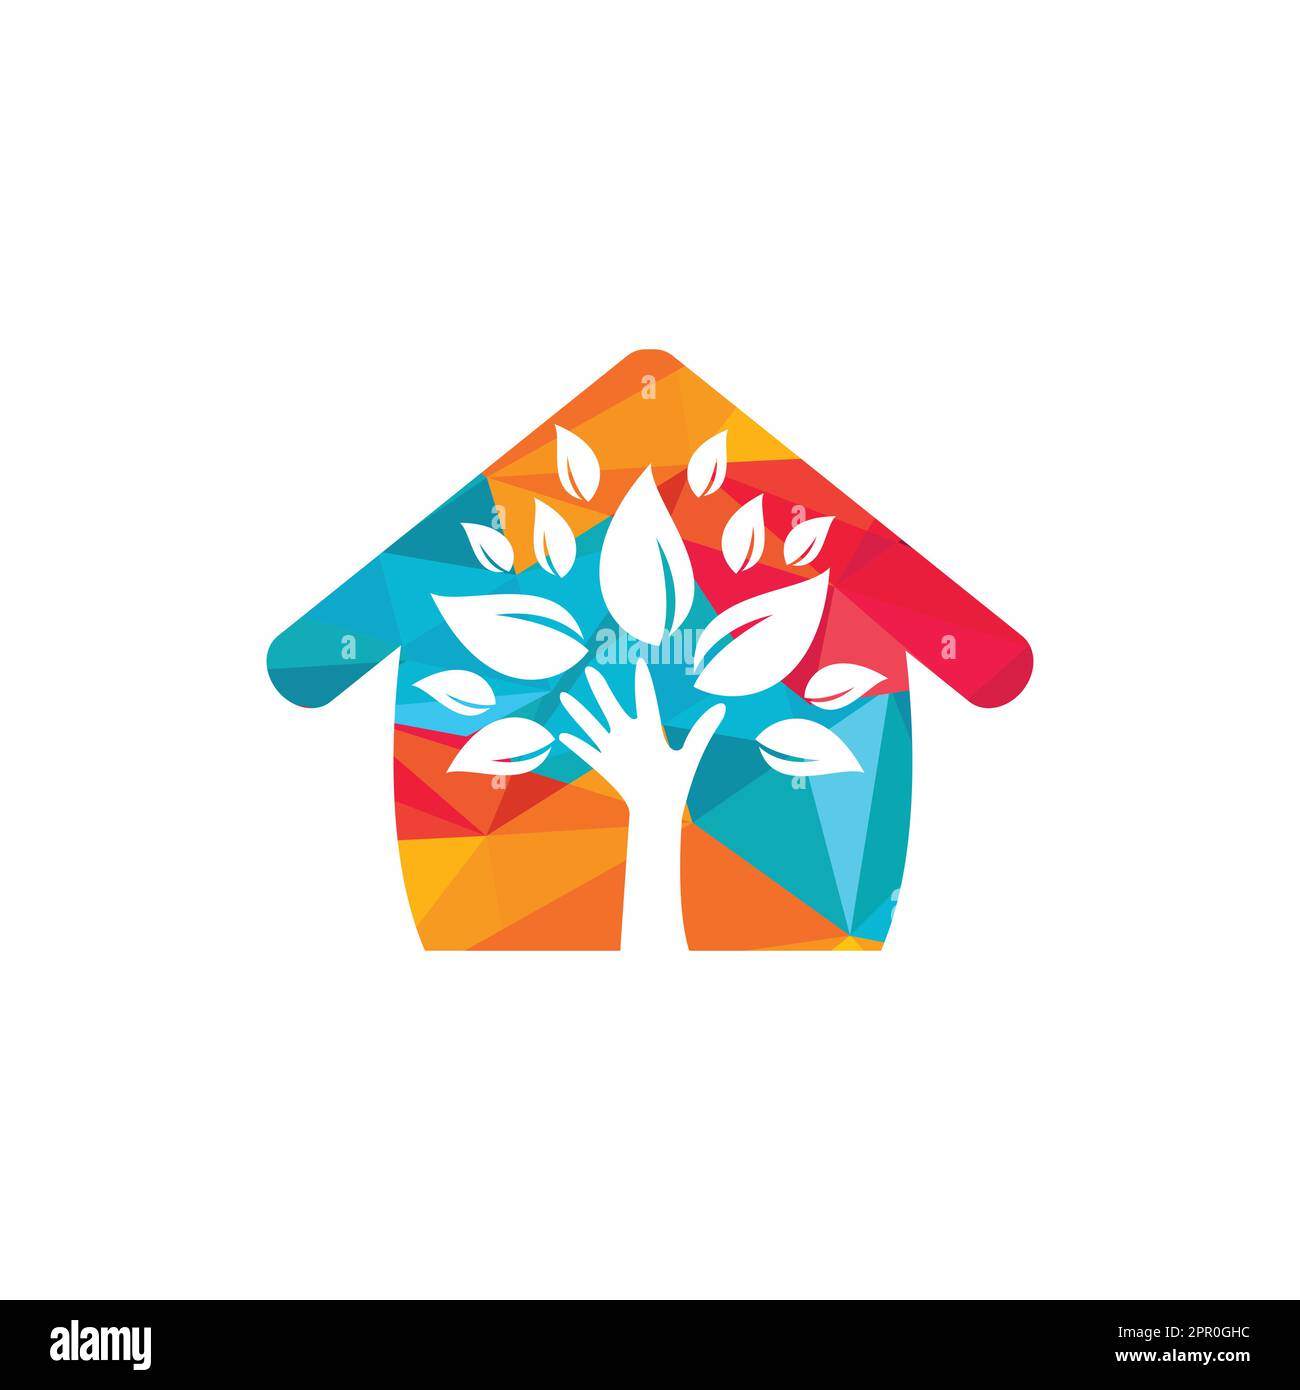 Design creativo di un albero a mano verde e logo della casa. Logo naturale per la cura della casa. Logo Spa. Salone di bellezza o logo yoga. Illustrazione Vettoriale